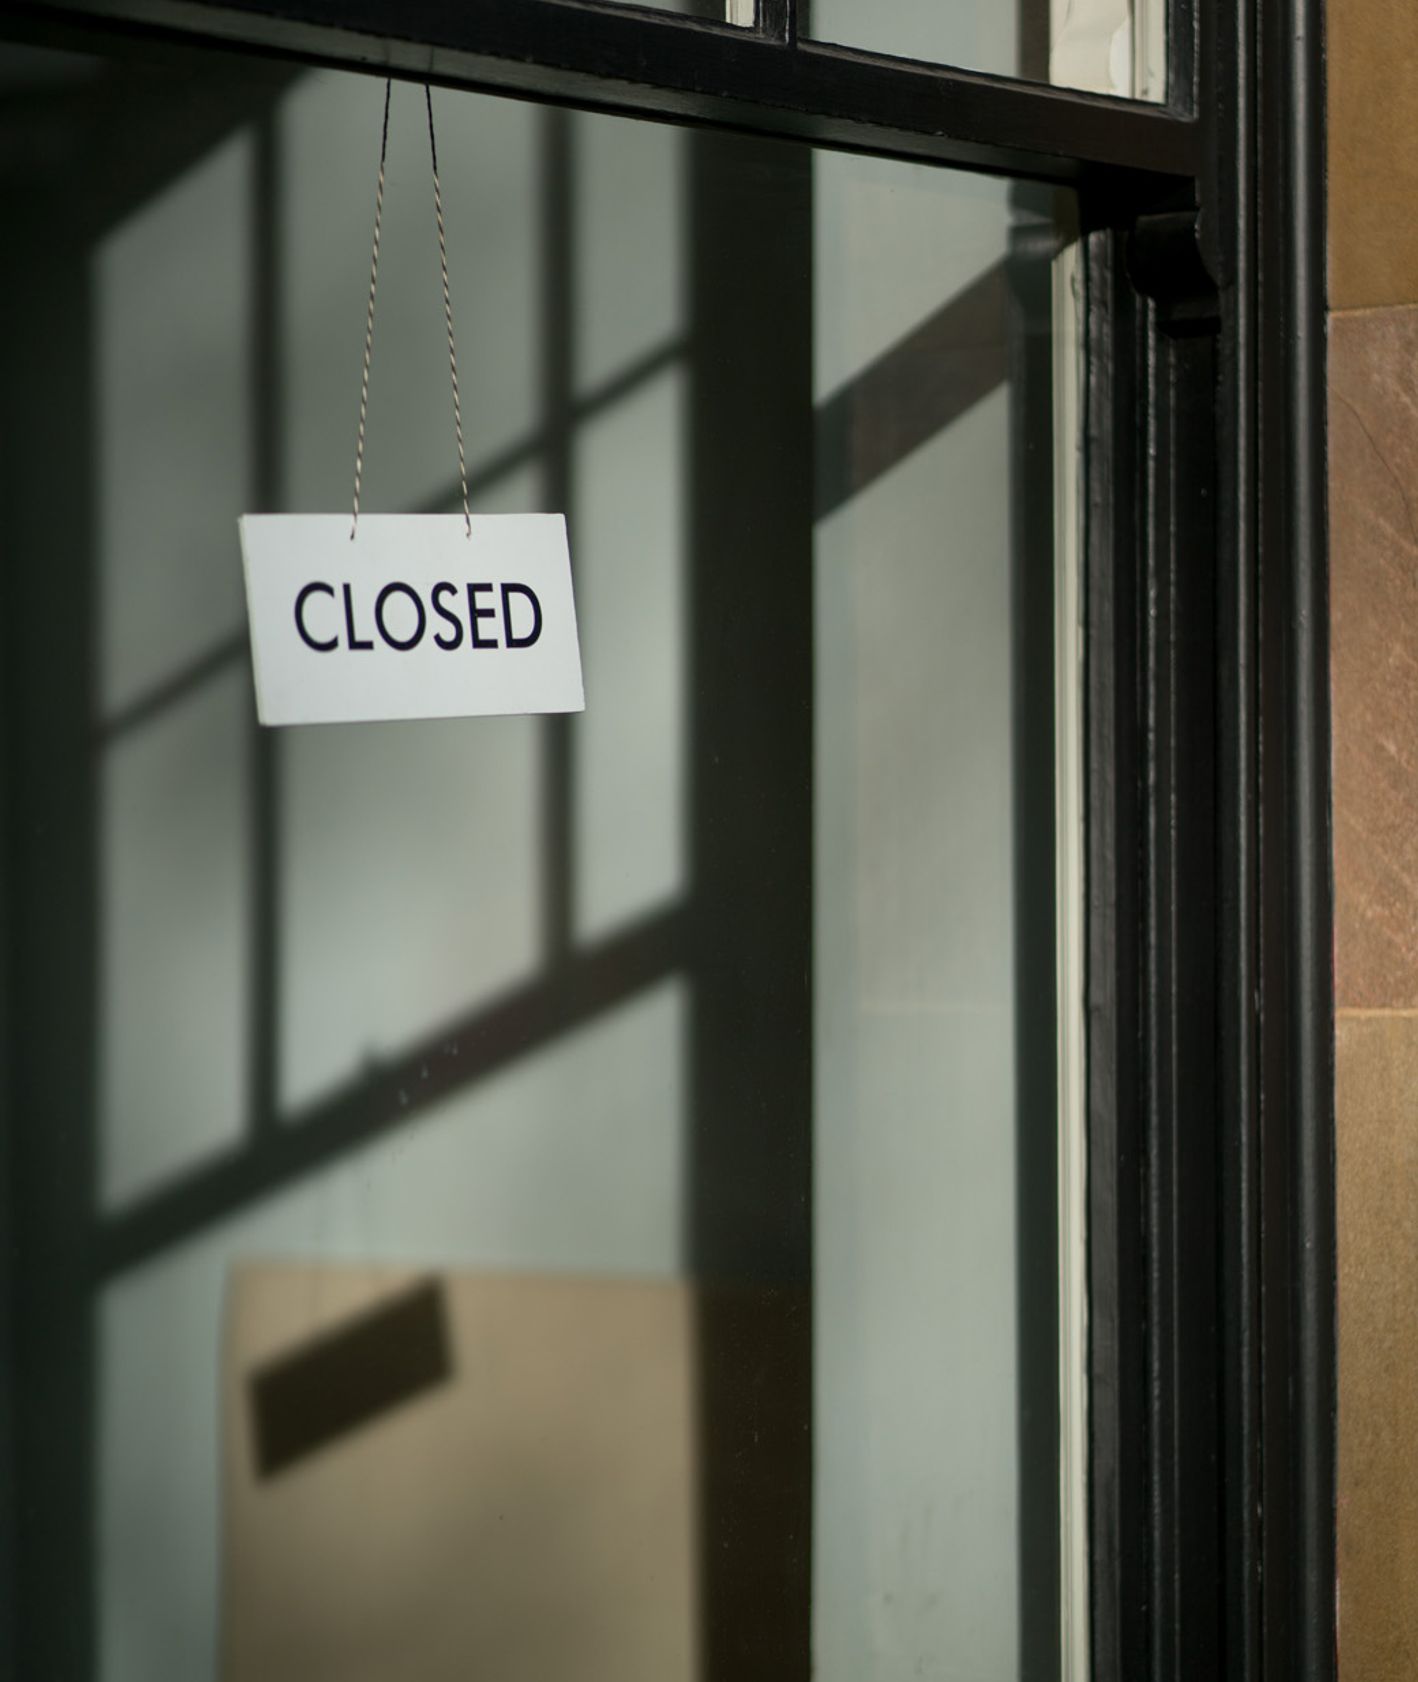 Napis zamknięte po angielsku (Closed) na zamkniętych drzwiach restauracji (fot. Craig Whitehead / unsplash.com)